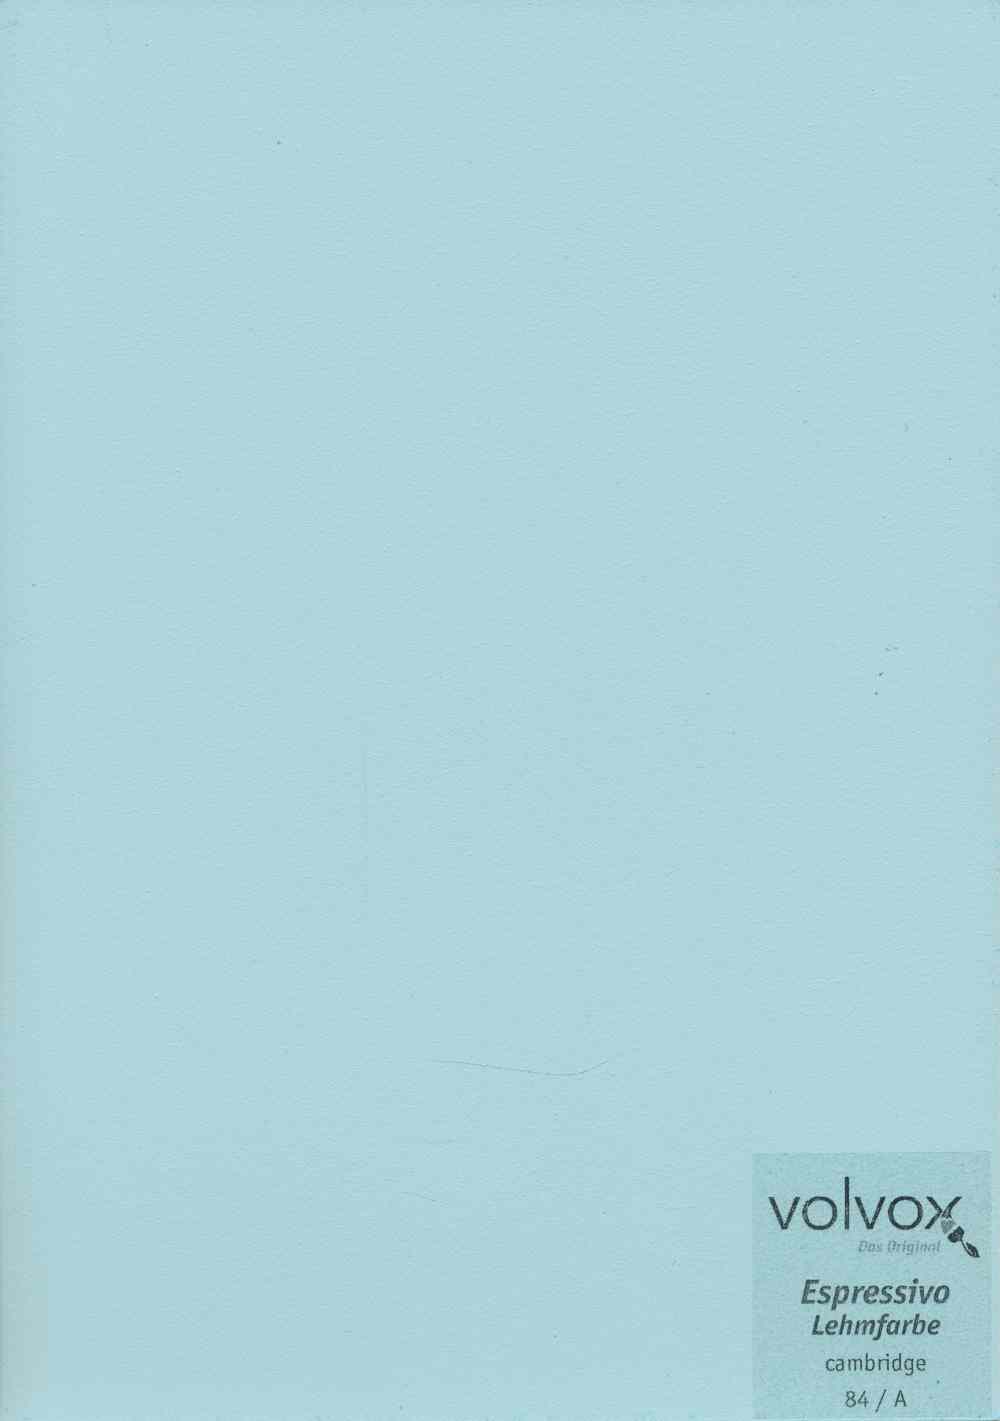 Volvox Espressivo Lehmfarbe 084 cambridge · 0,9ltr.